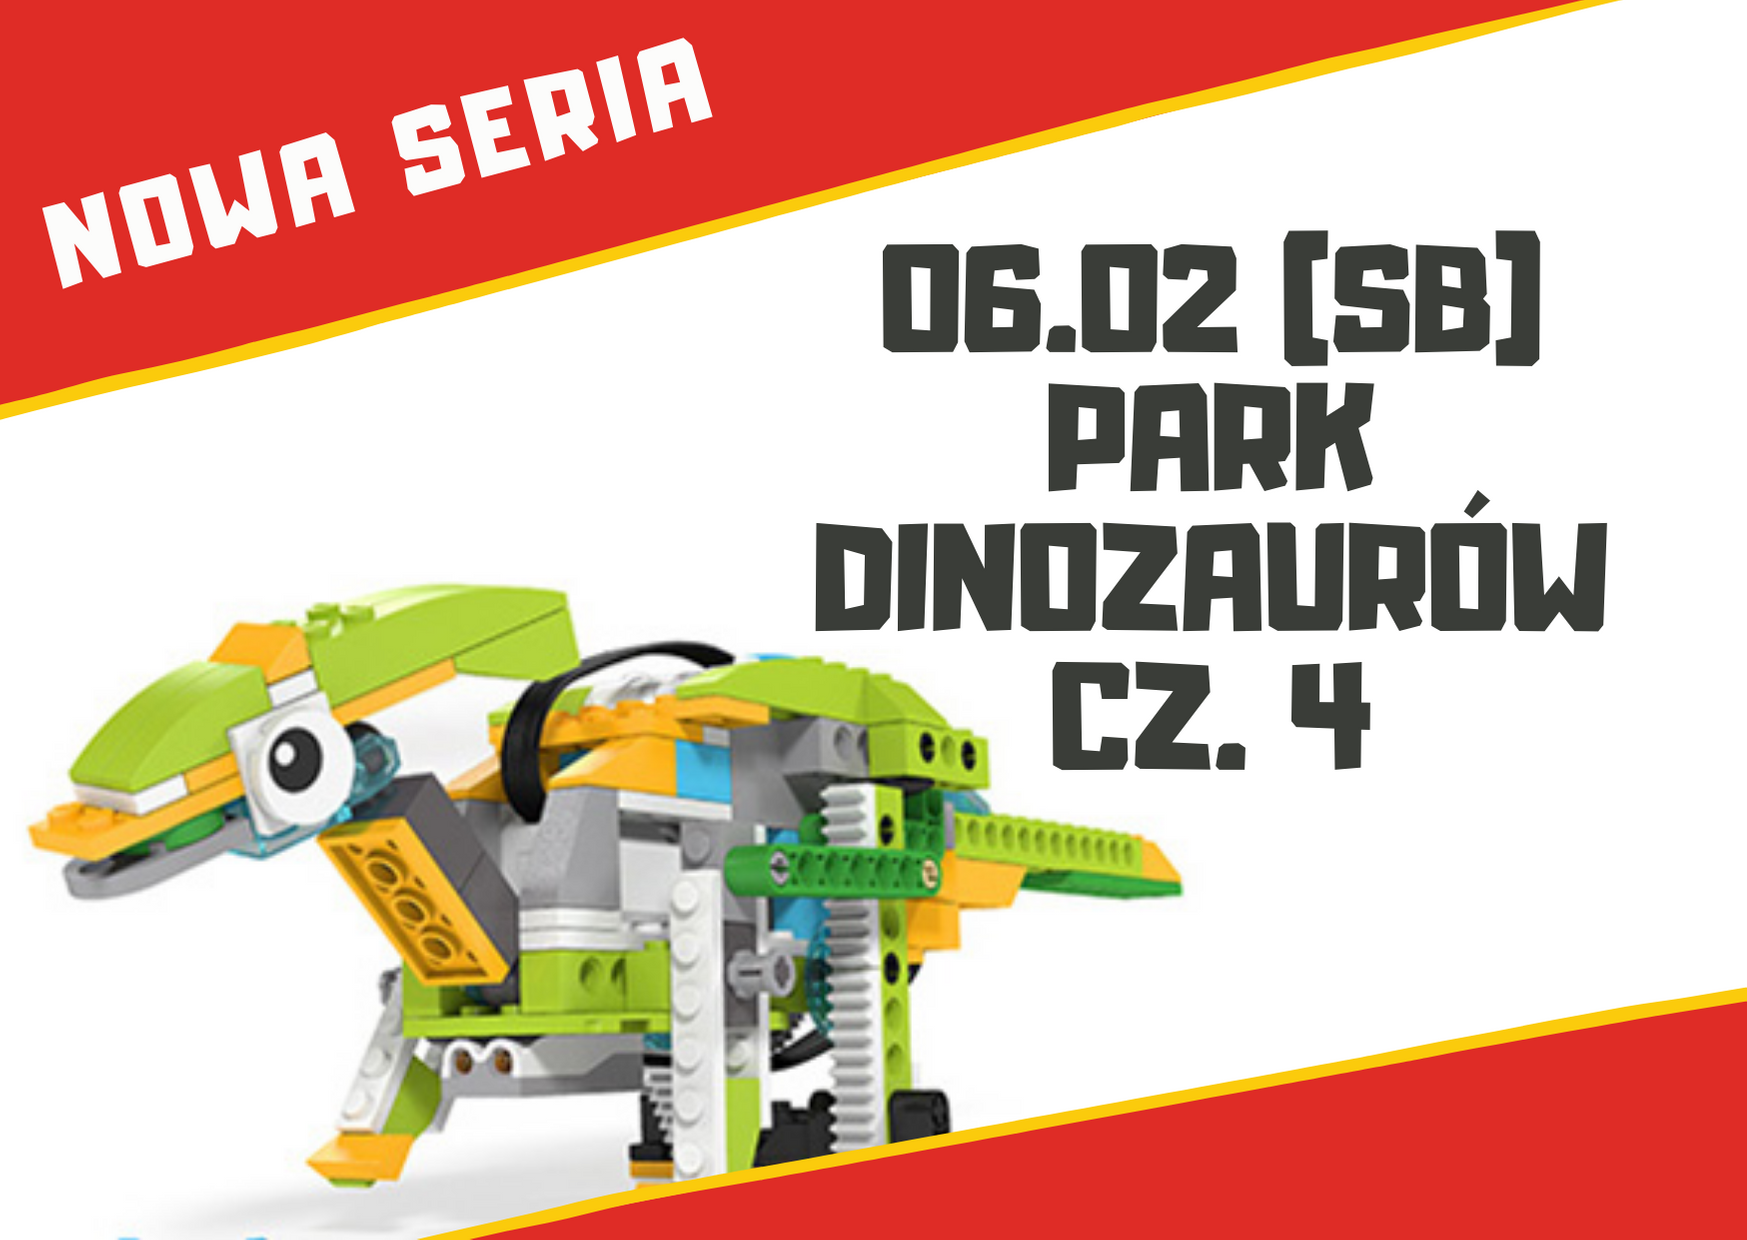 Park Dinozaurów – warsztaty robotyki dla dzieci 7+ lat